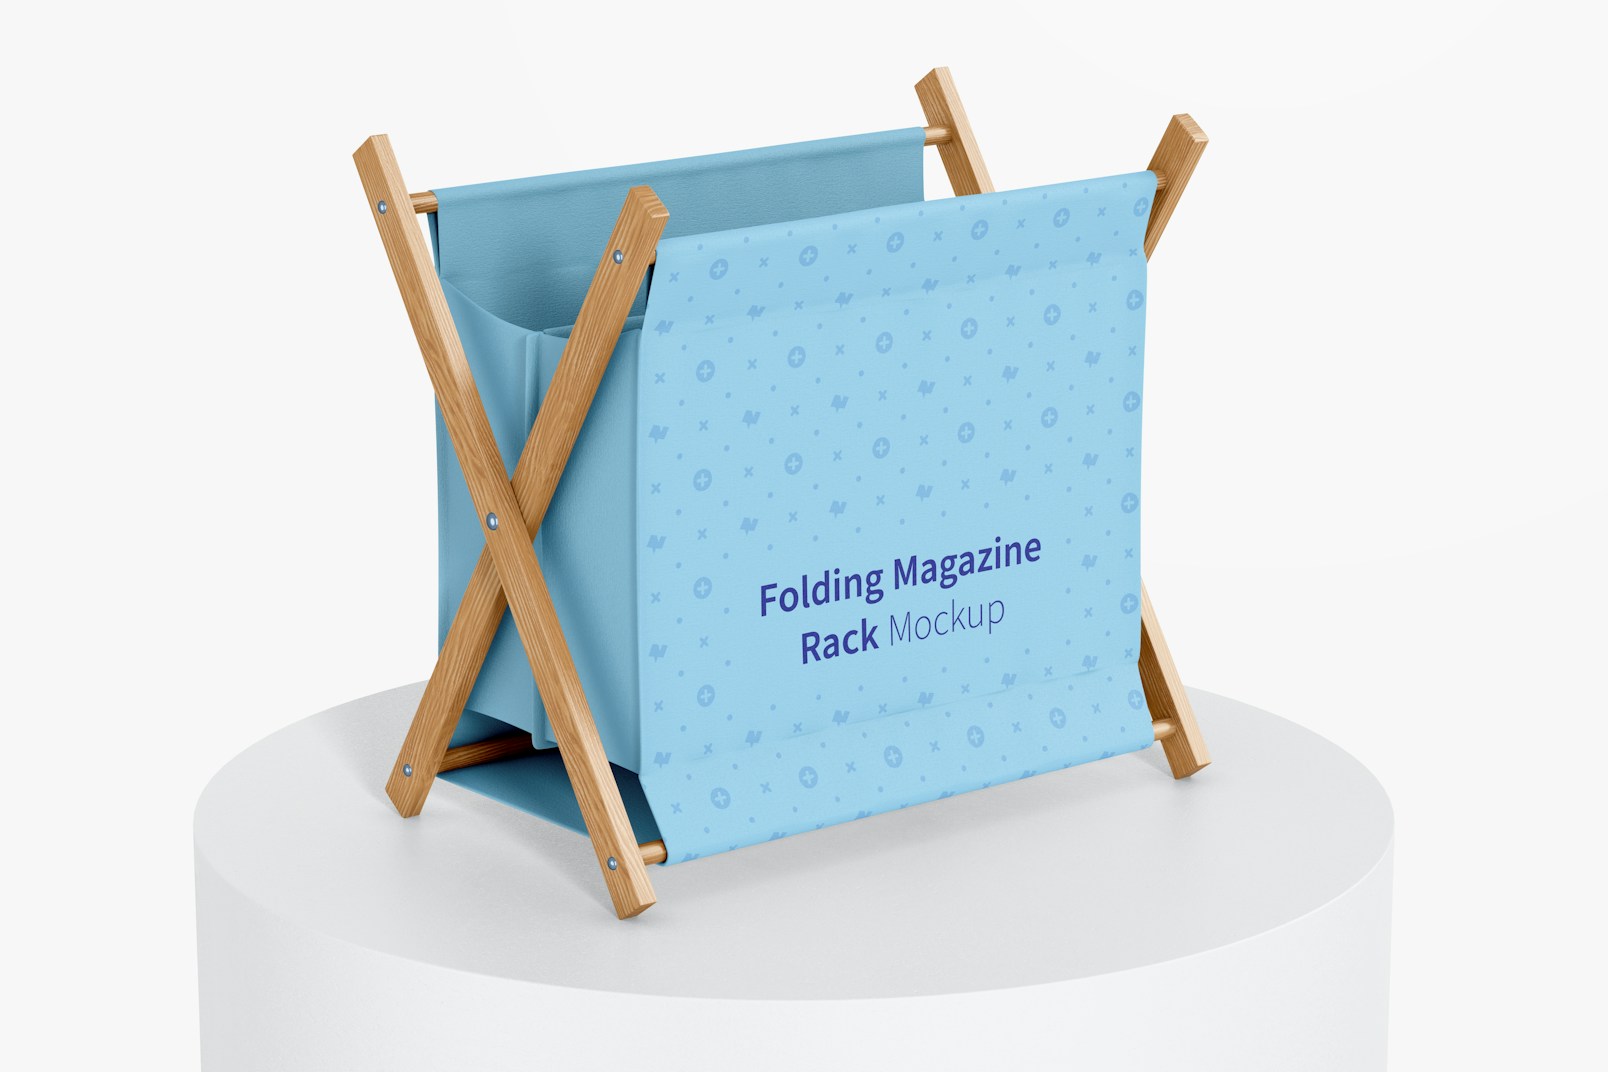 Folding Magazine Rack Mockup, on Surface